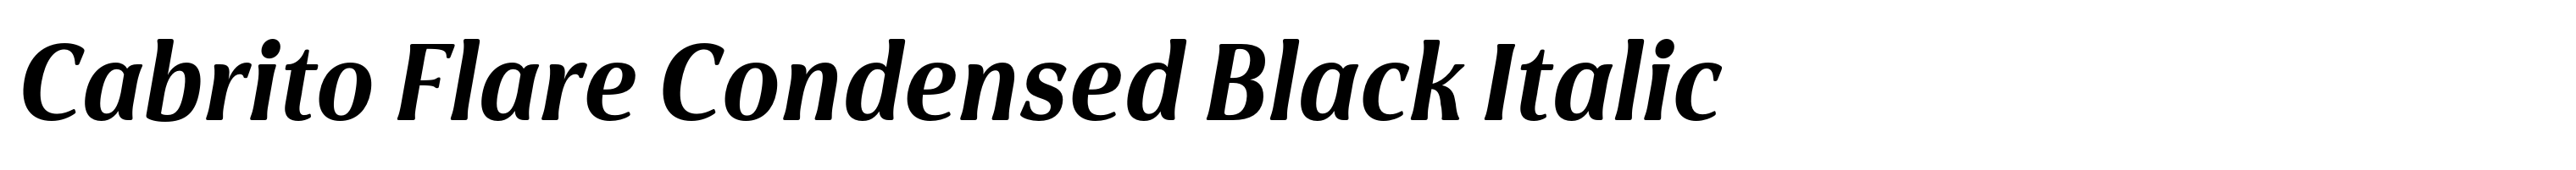 Cabrito Flare Condensed Black Italic